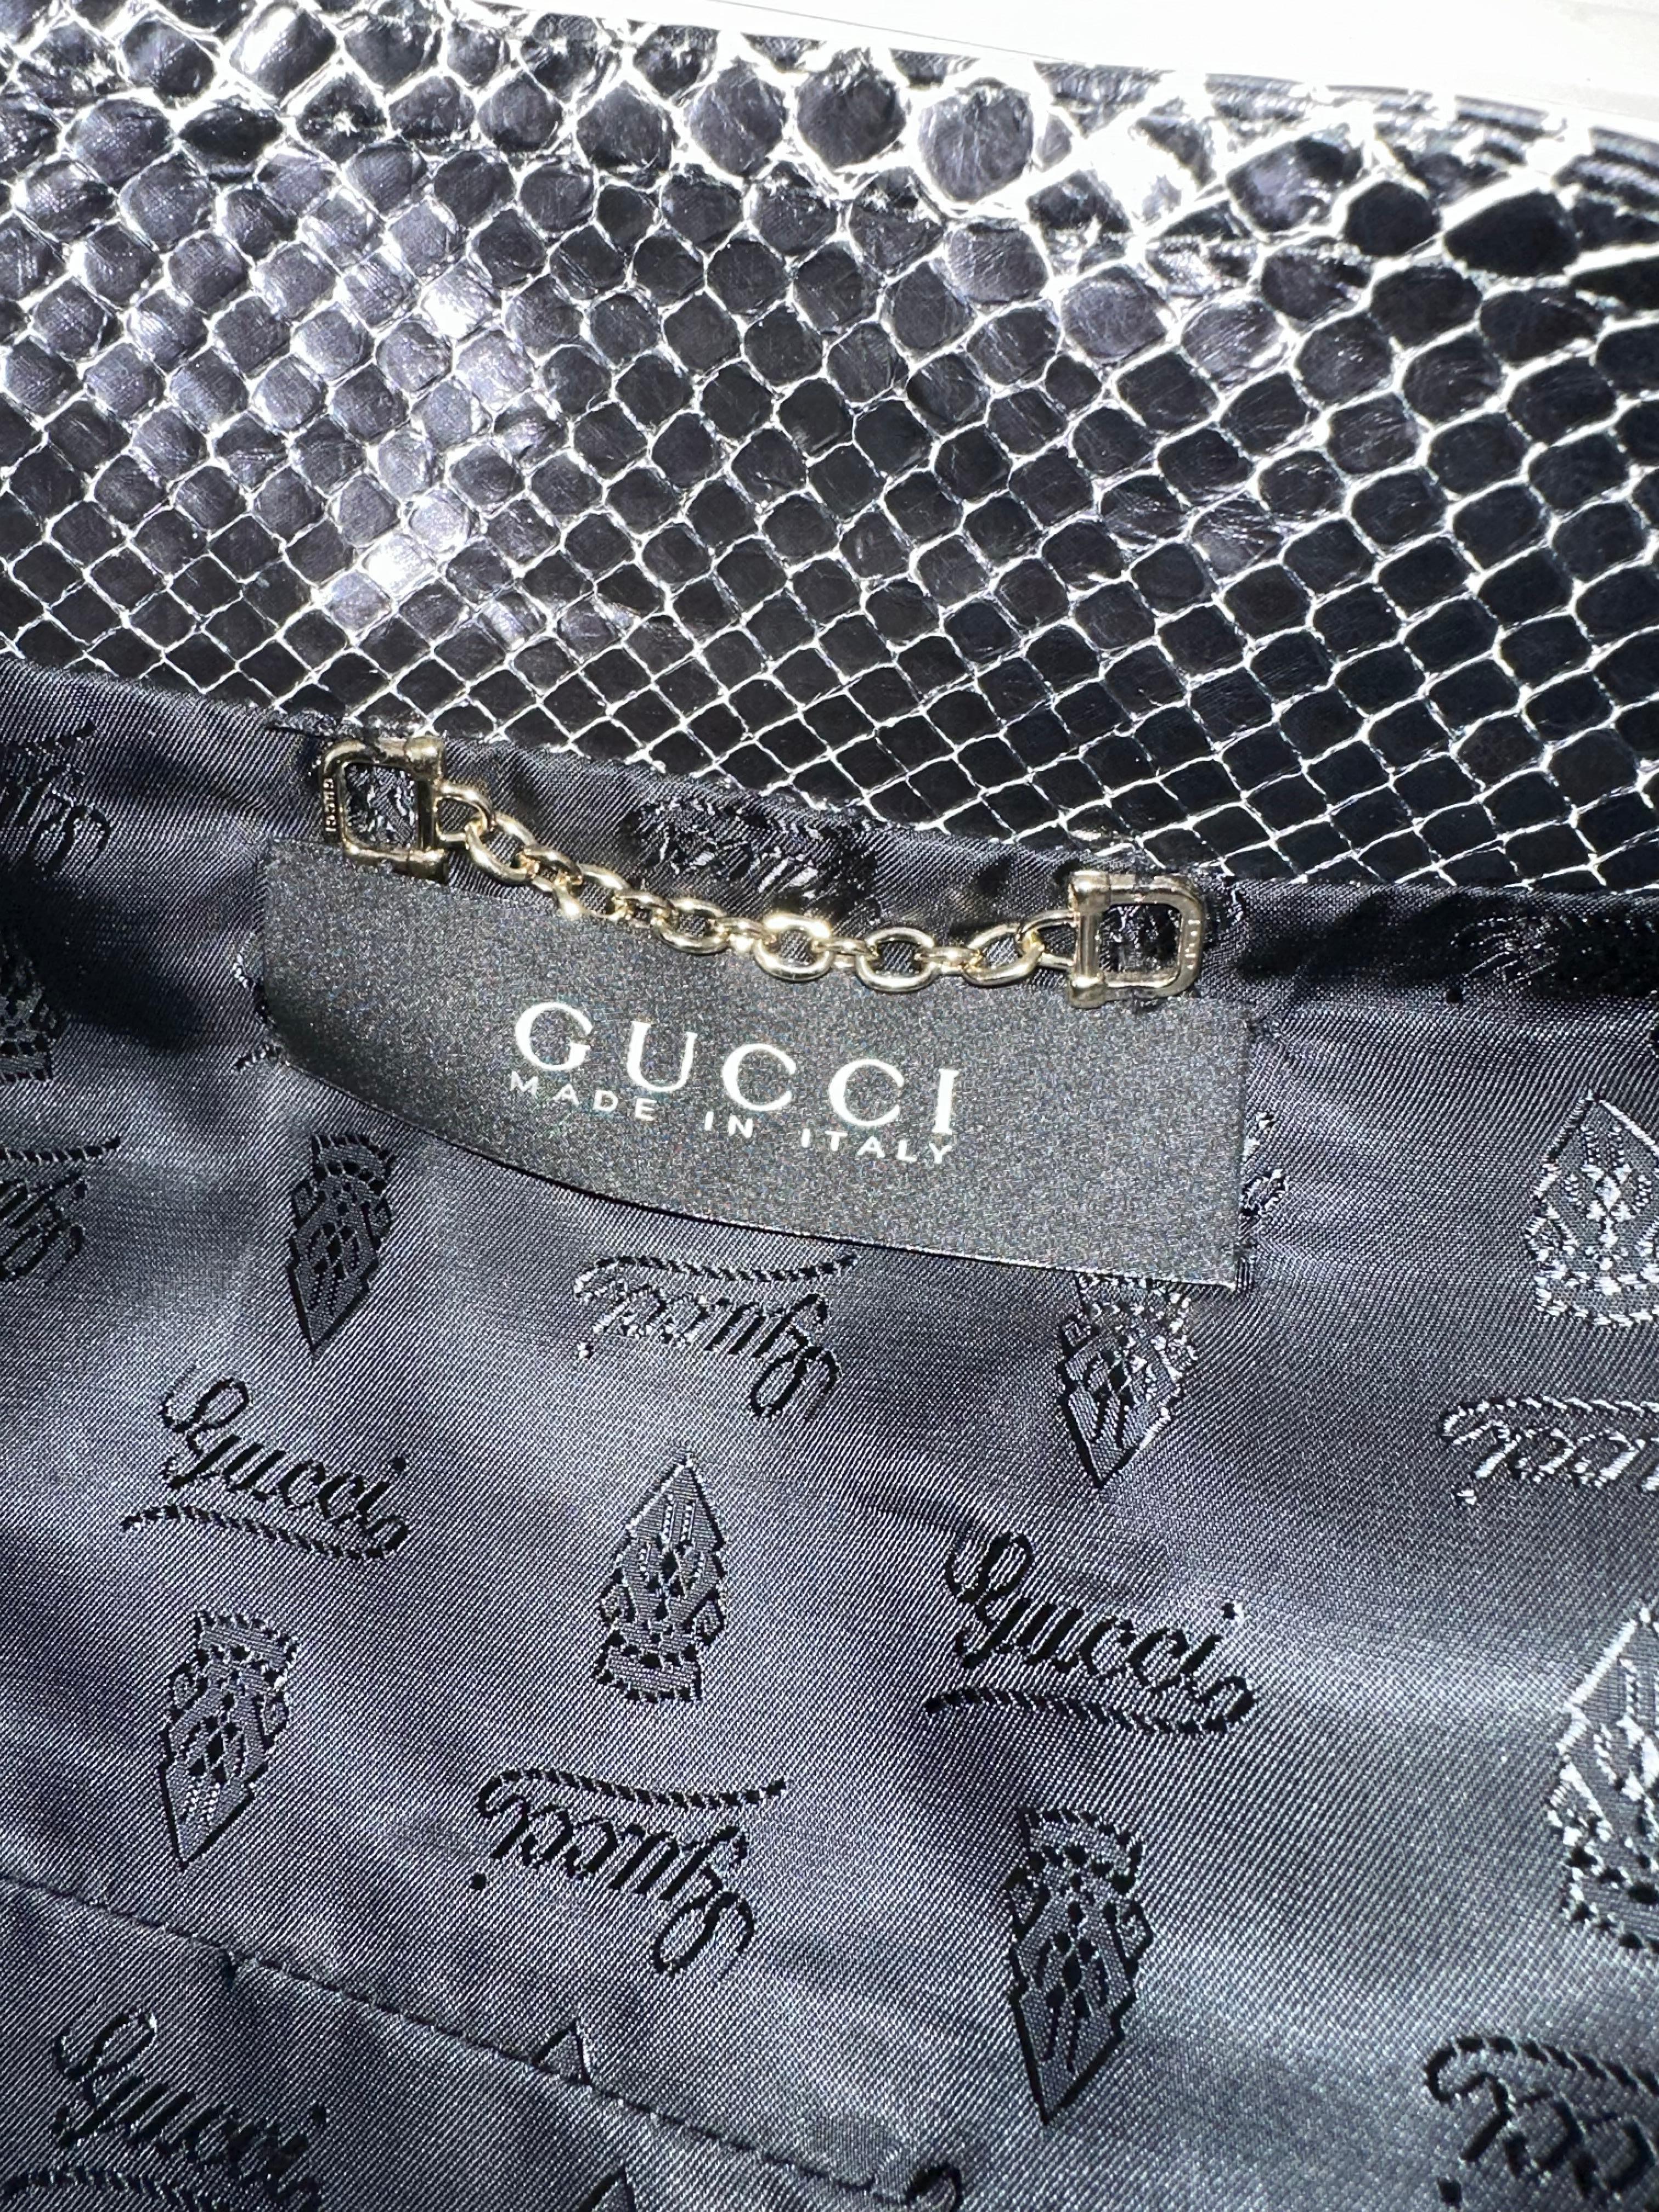 Gucci black snakeskin leather jacket  For Sale 2